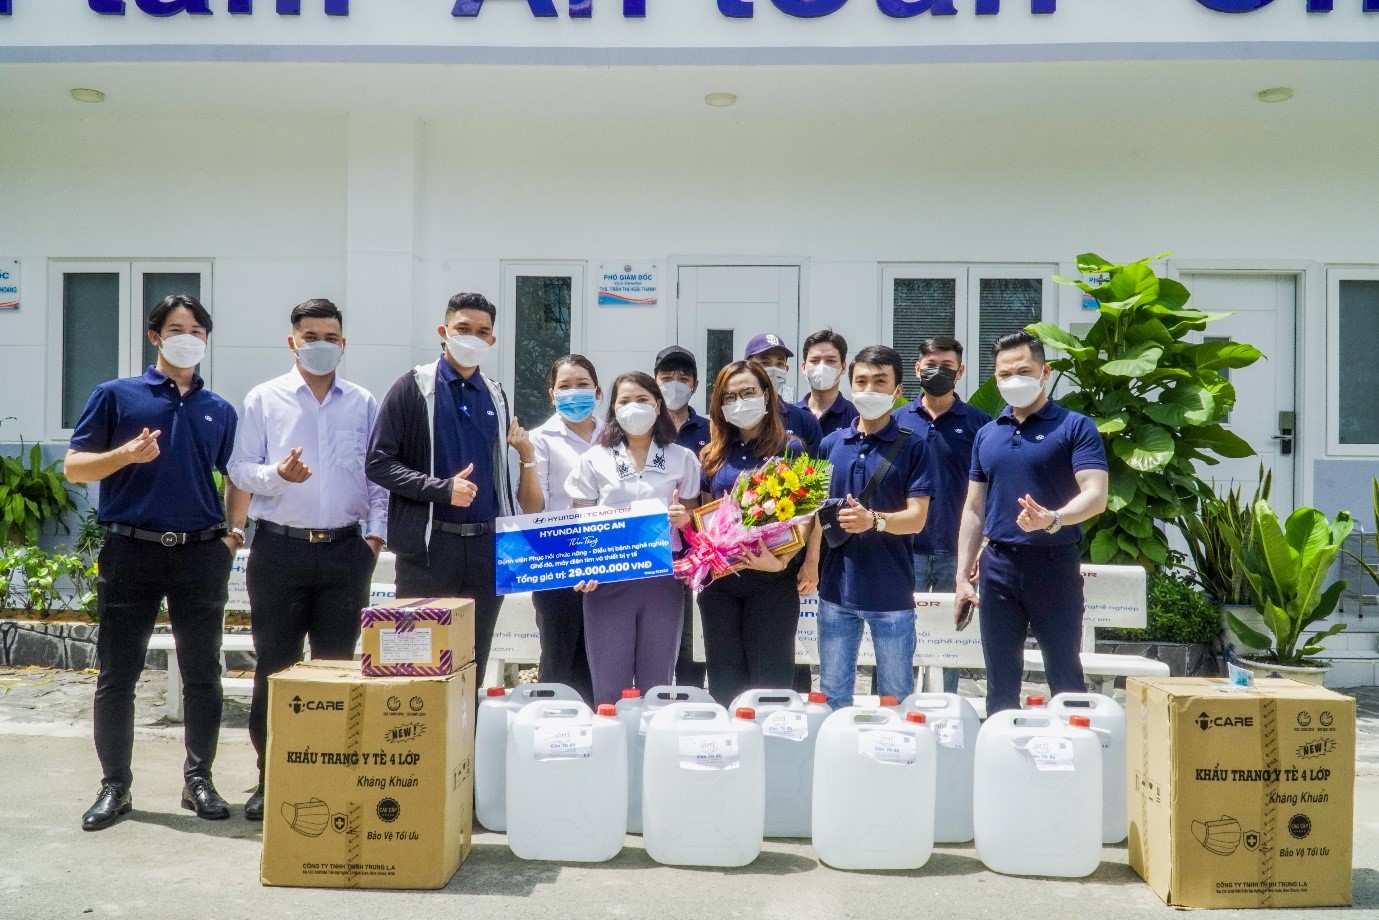 Hyundai Ngọc An trao tặng thiết bị giáo dục cho hơn 200 em nhỏ tại Trường tình thương Ái Linh - 5